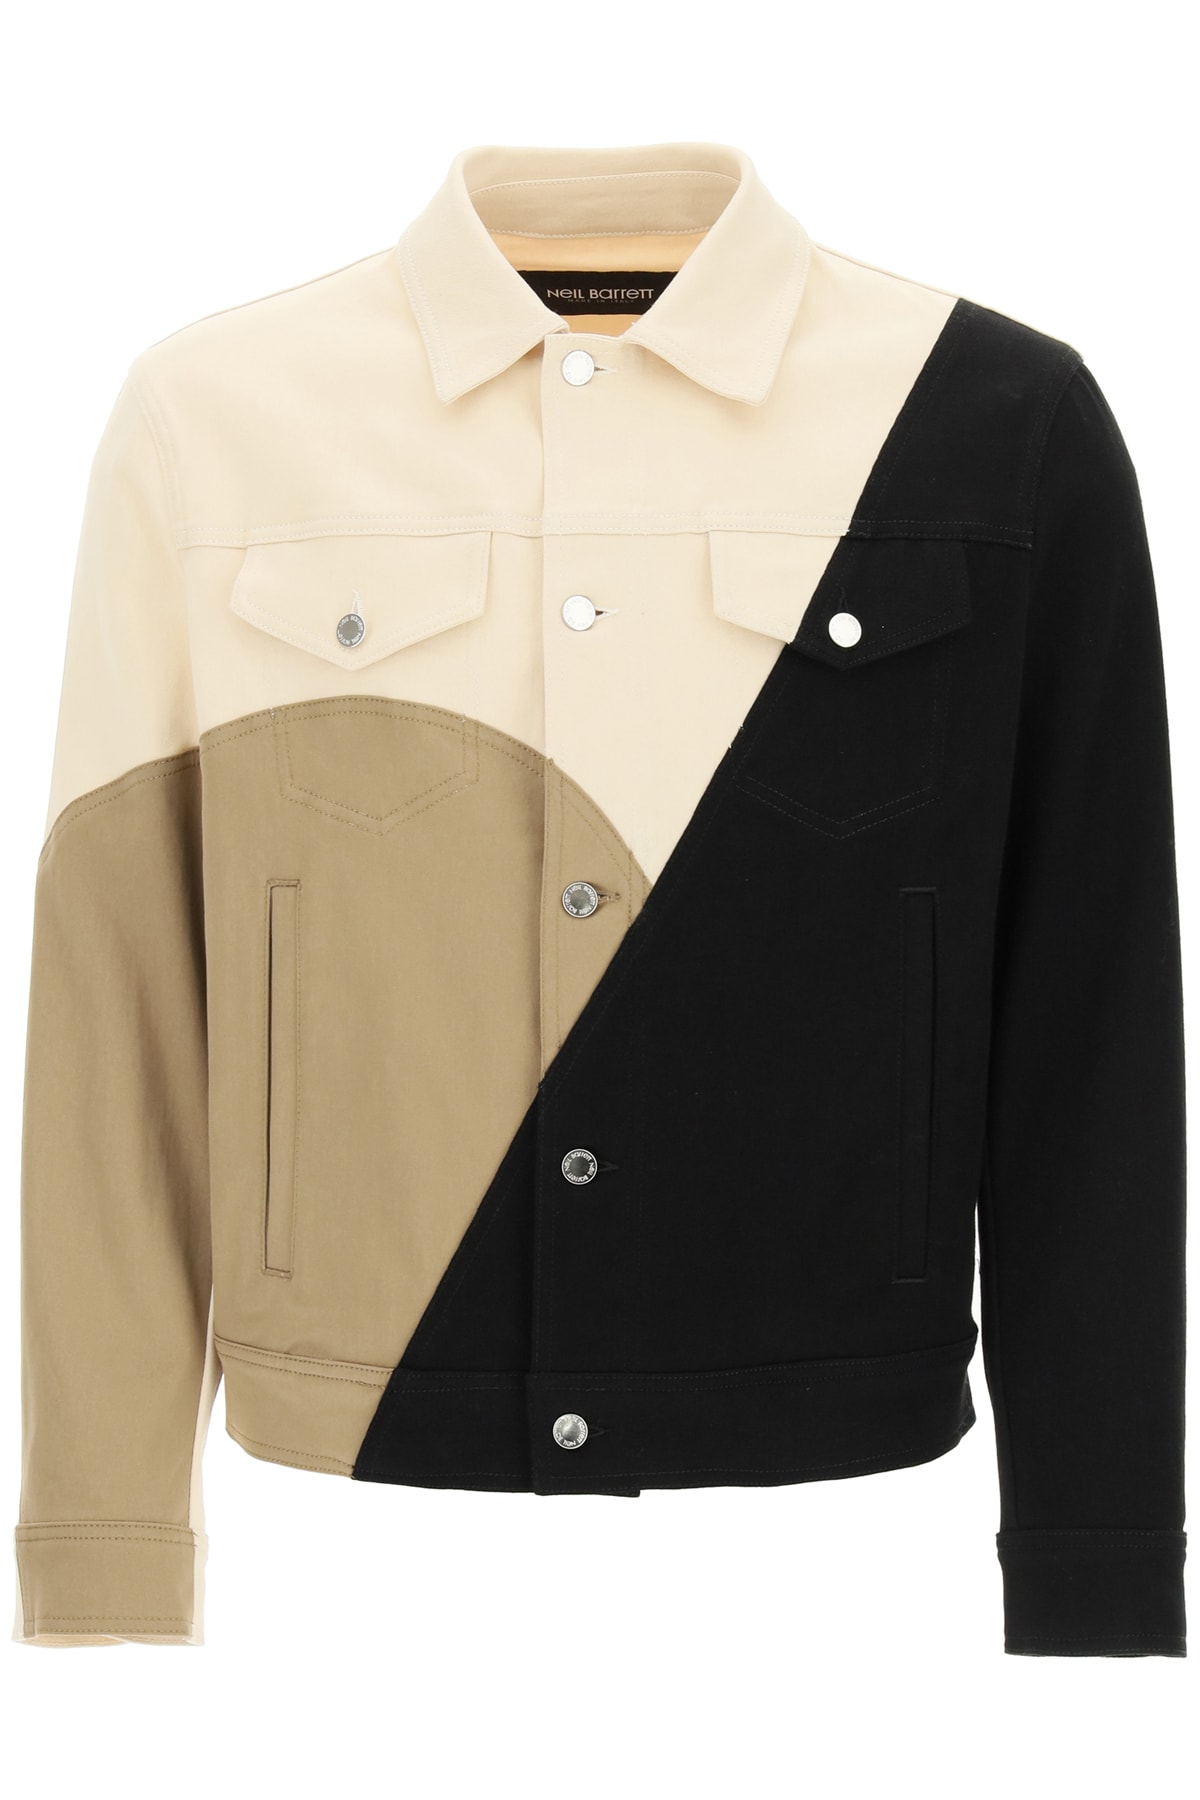 Neil Barrett Bauhaus Modernist Denim Jacket